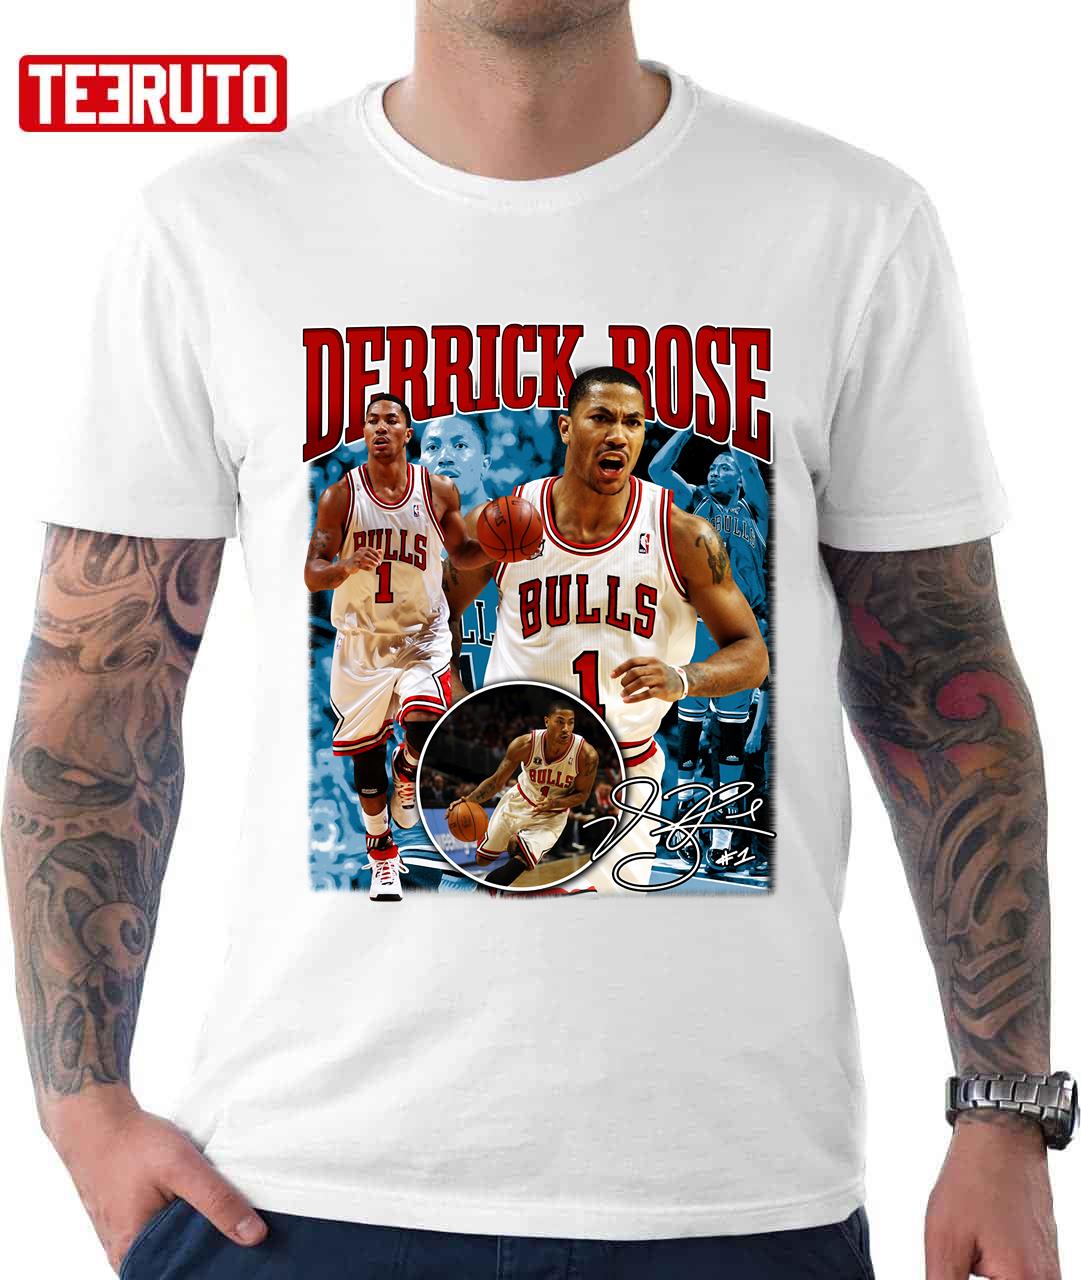 derrick rose vintage shirt